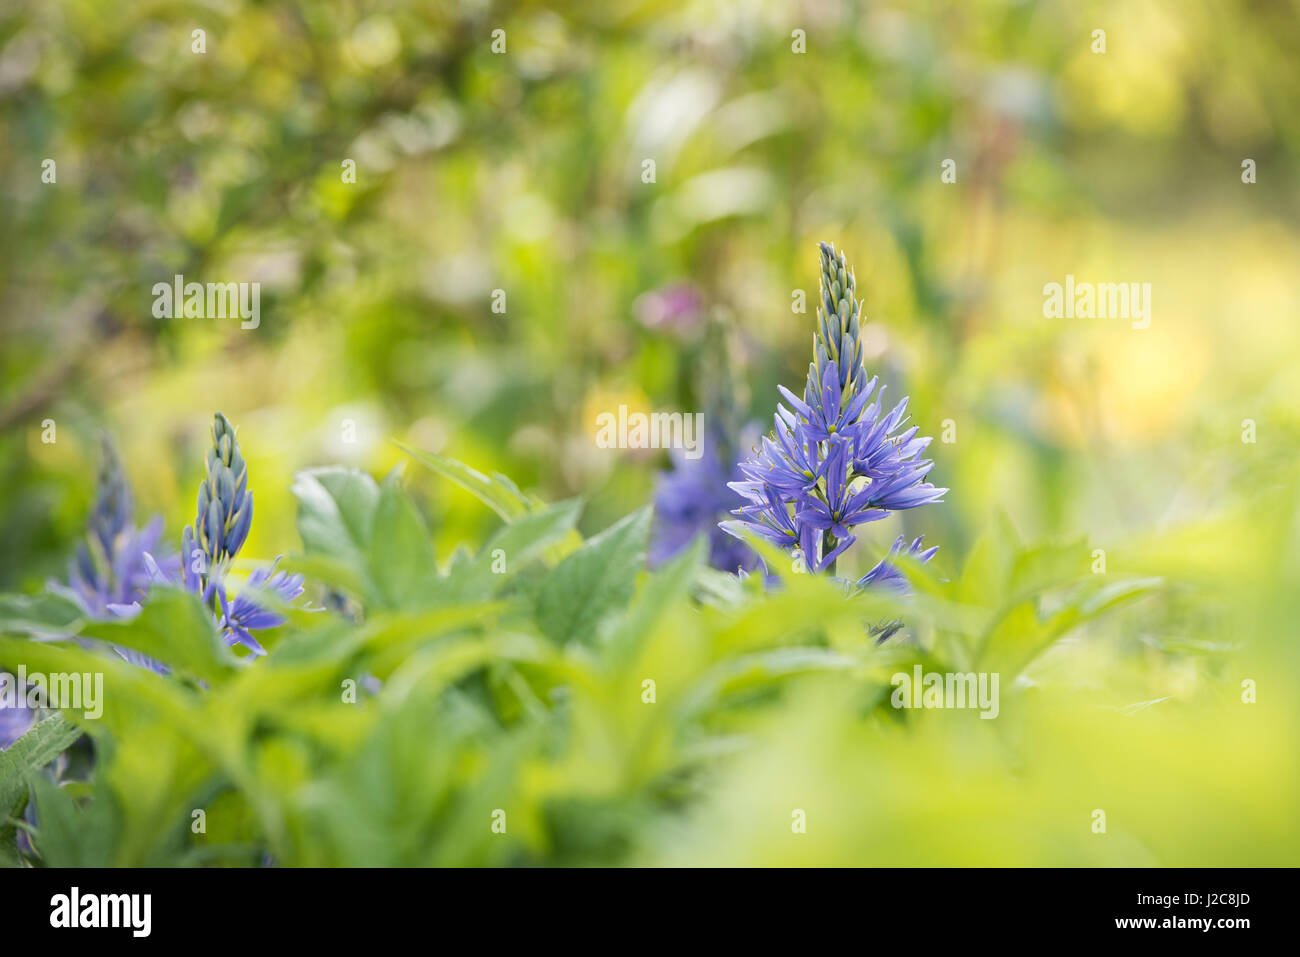 Camassia leichtlinii. Camas Quamash, Wild hyacinth flowers Stock Photo